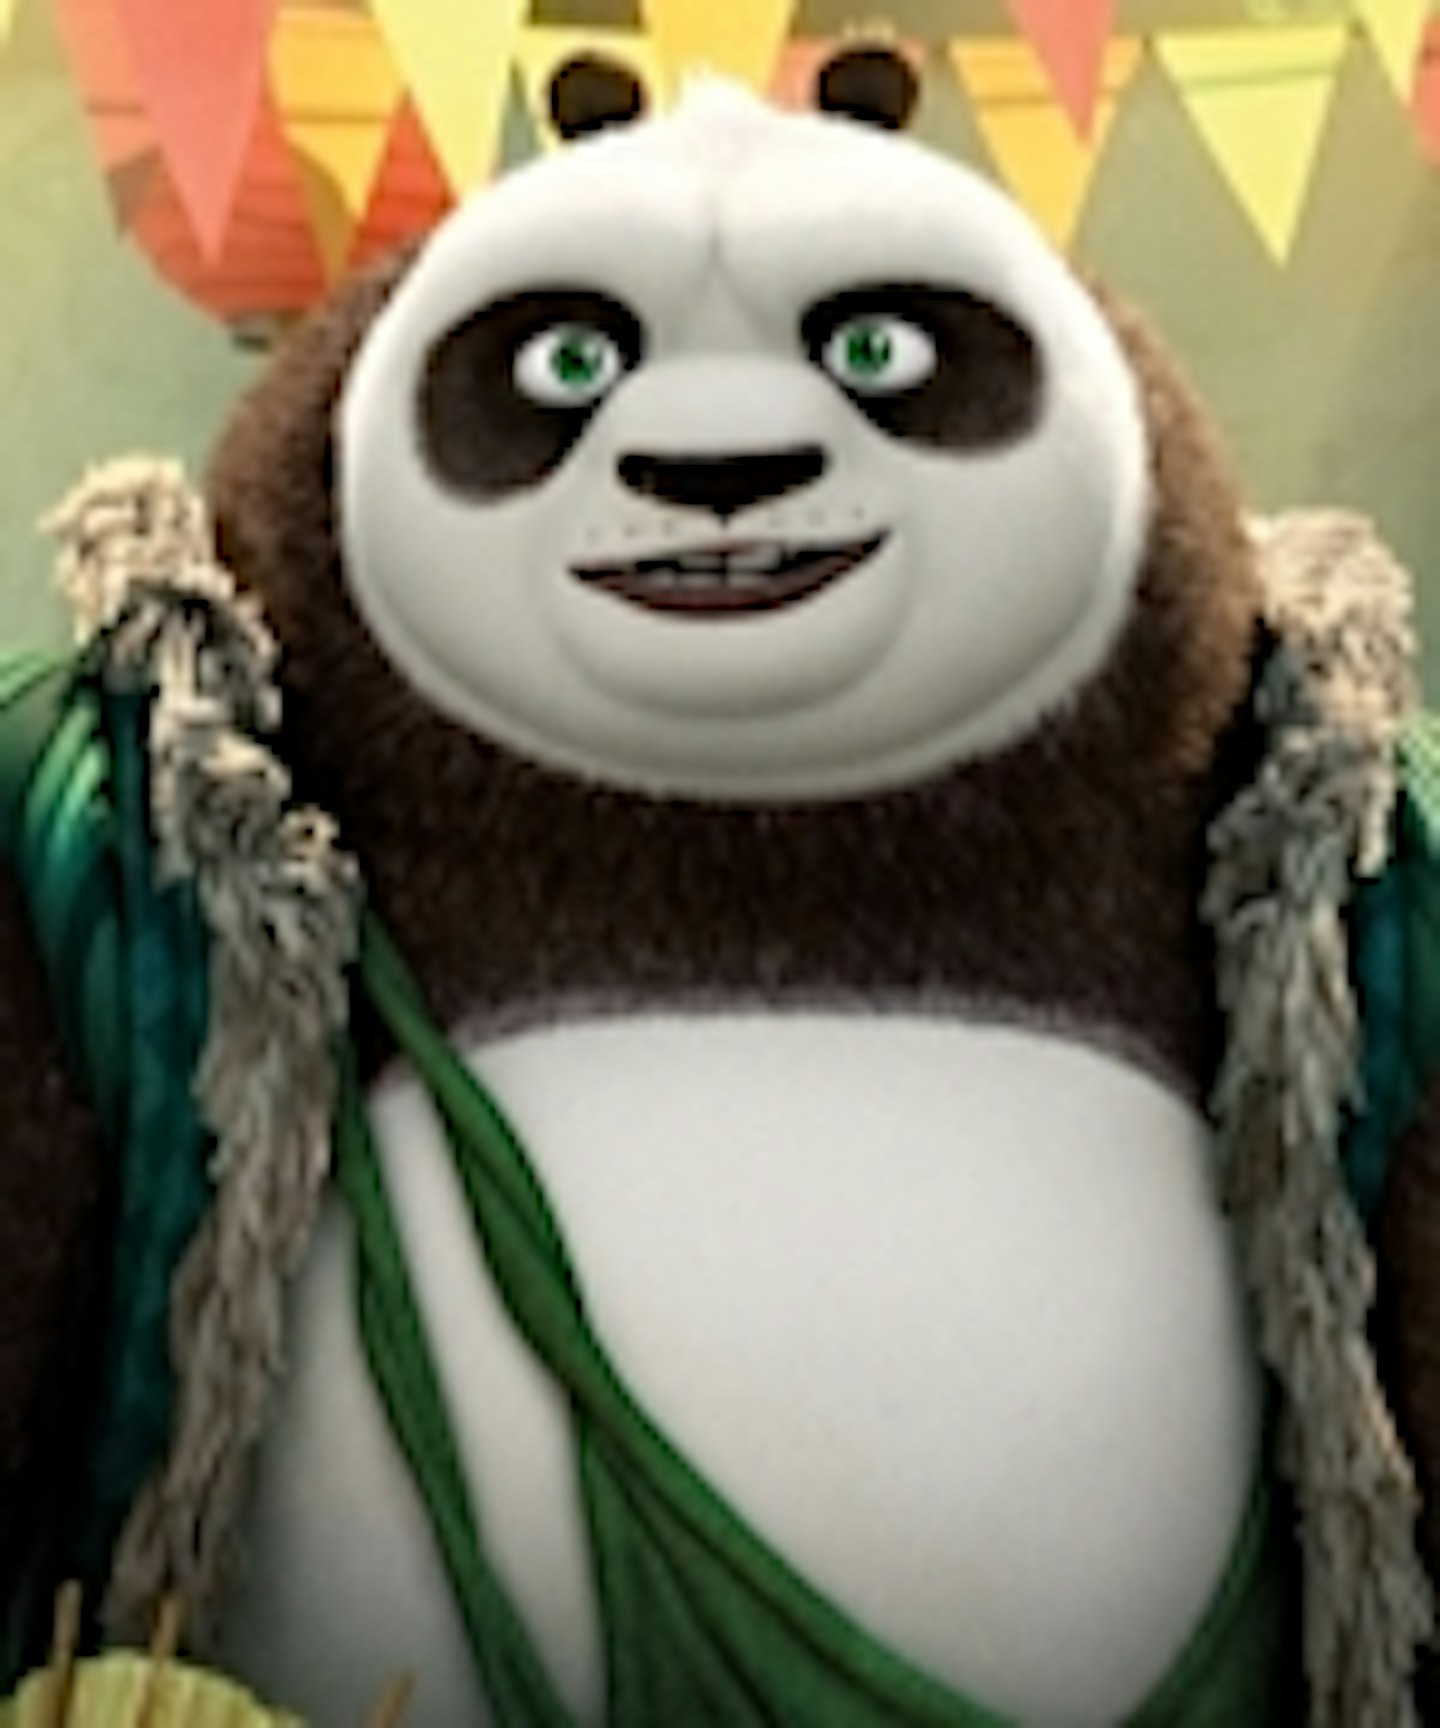 kung fu panda 3 trailer